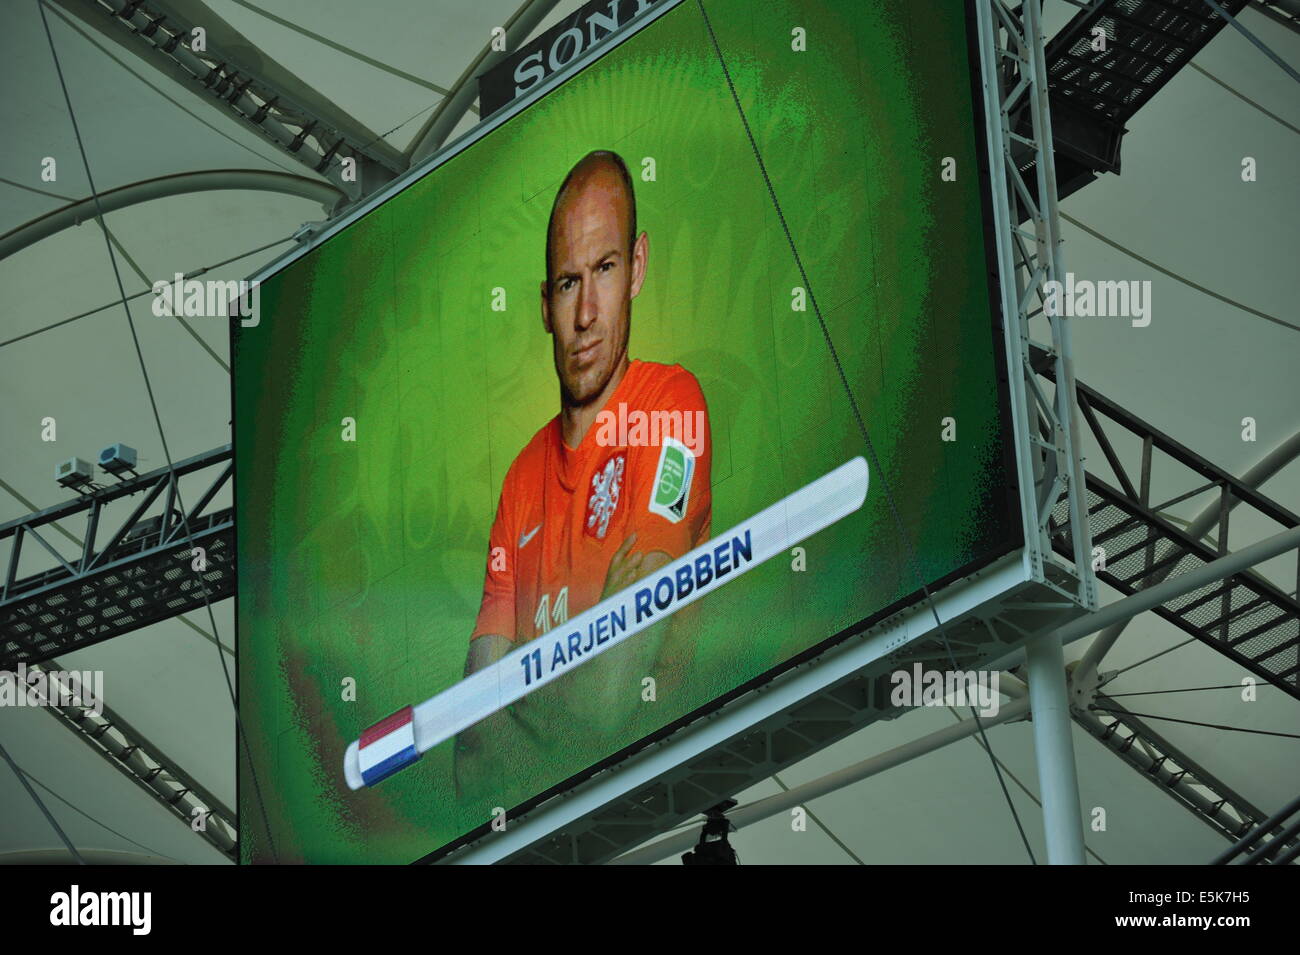 Arjen Robben, WM 2014, l'Arena Fonte Nova, Salvador da Bahia, Brésil Banque D'Images